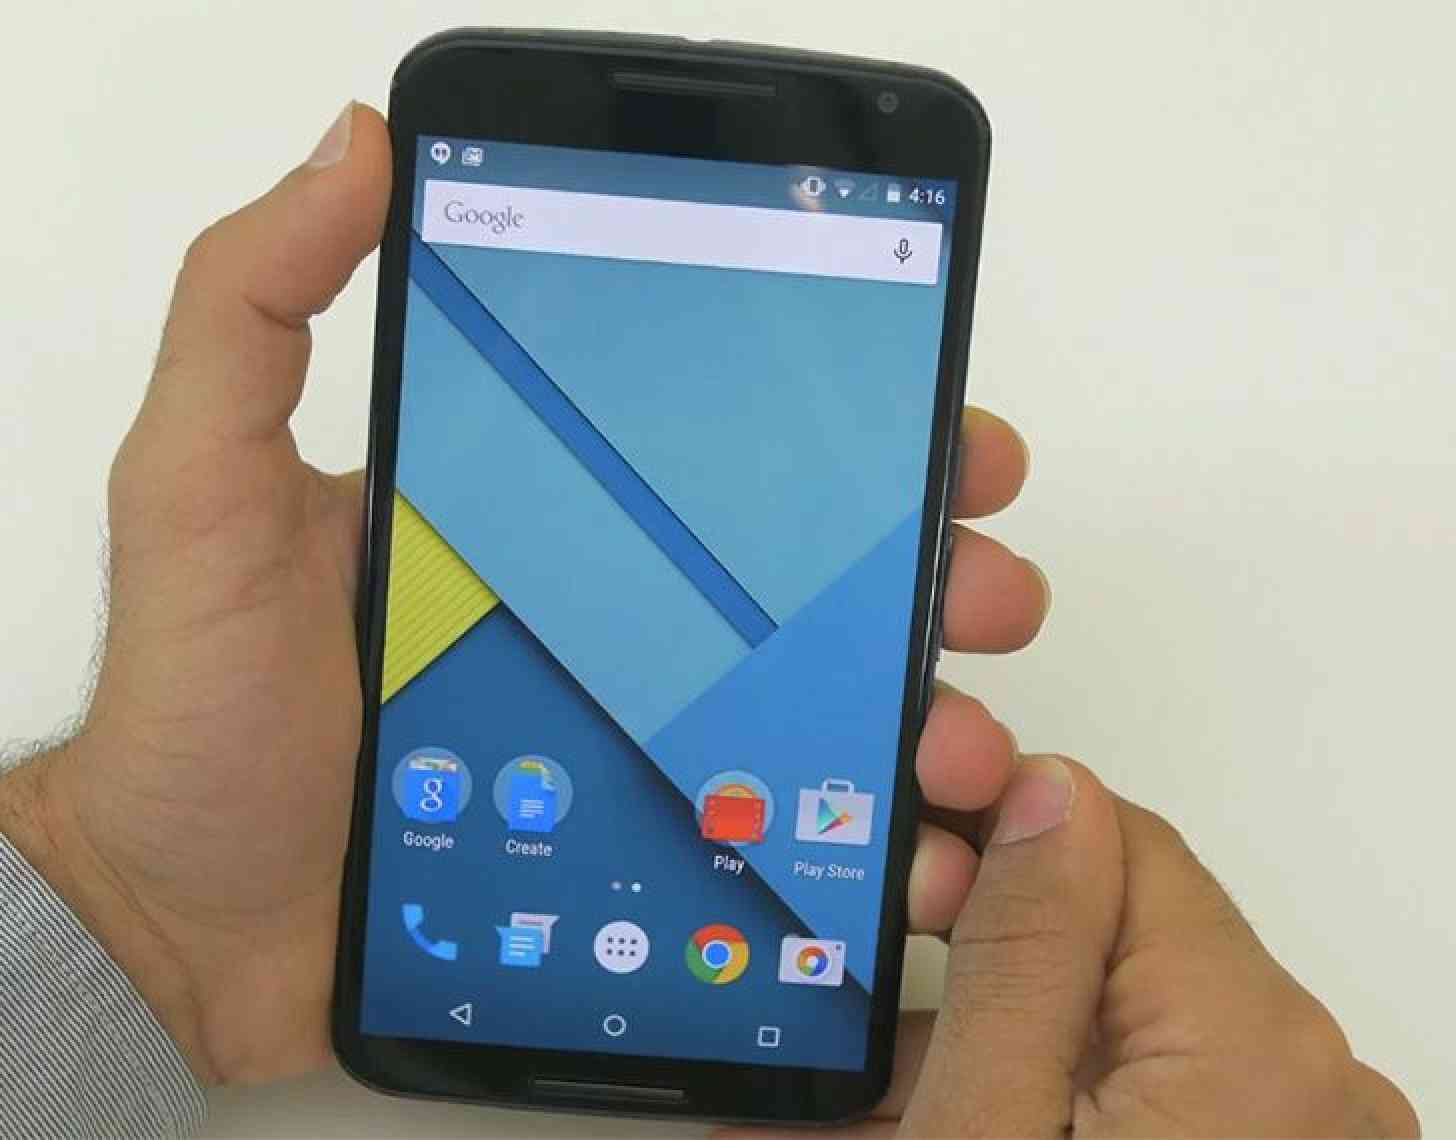 Nexus 6 hands on